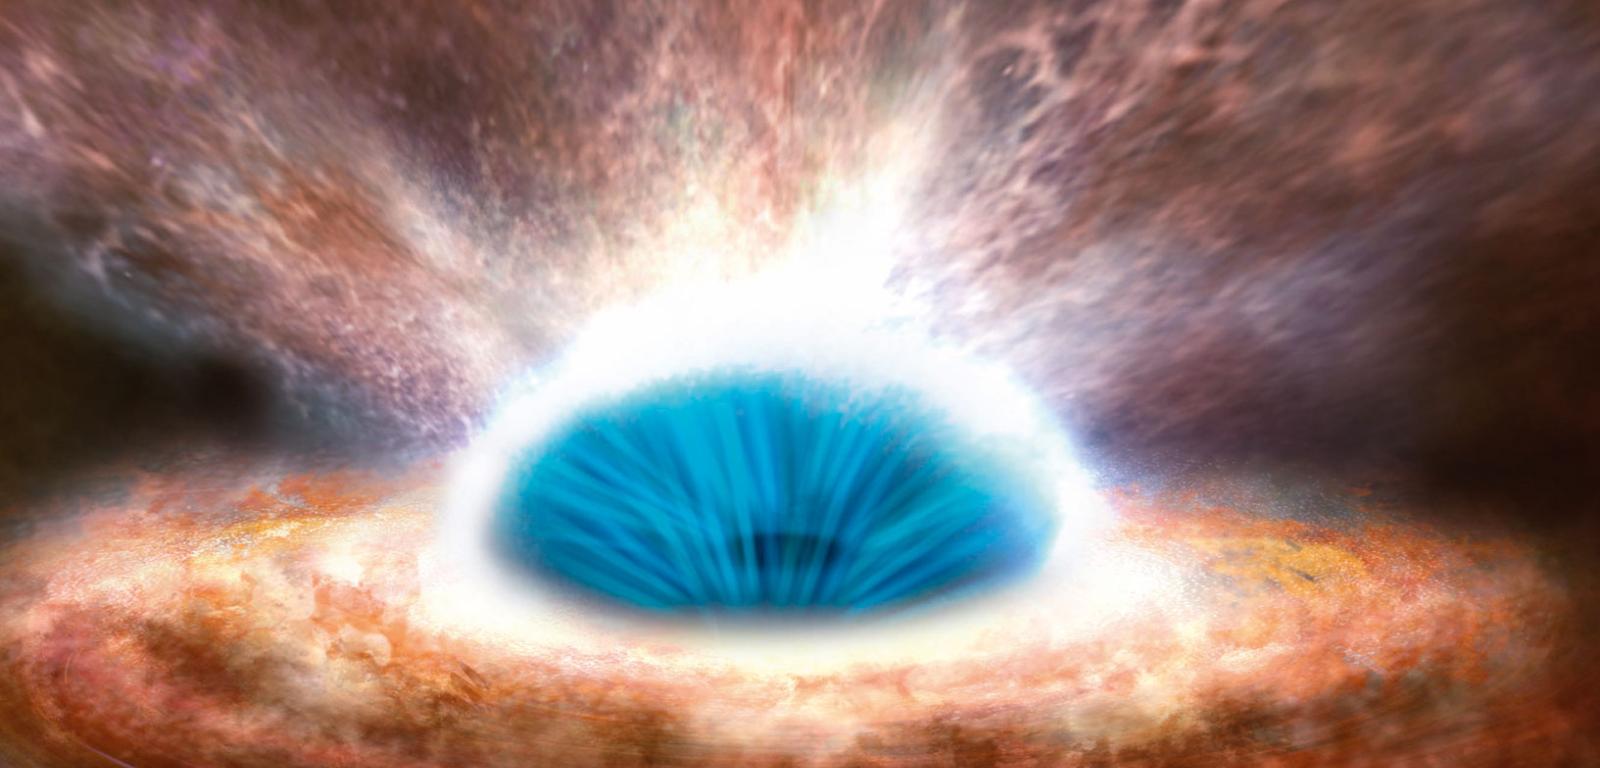 Wizualizacja supermasywnej centralnej czarnej dziury w galaktyce IRAS F11119+3257. Jej badania dowiodły, że te gigantyczne obiekty wyrzucają z macierzystej galaktyki ogromne masy pyłu i gazu w formie dżetów i wiatrów galaktycznych.